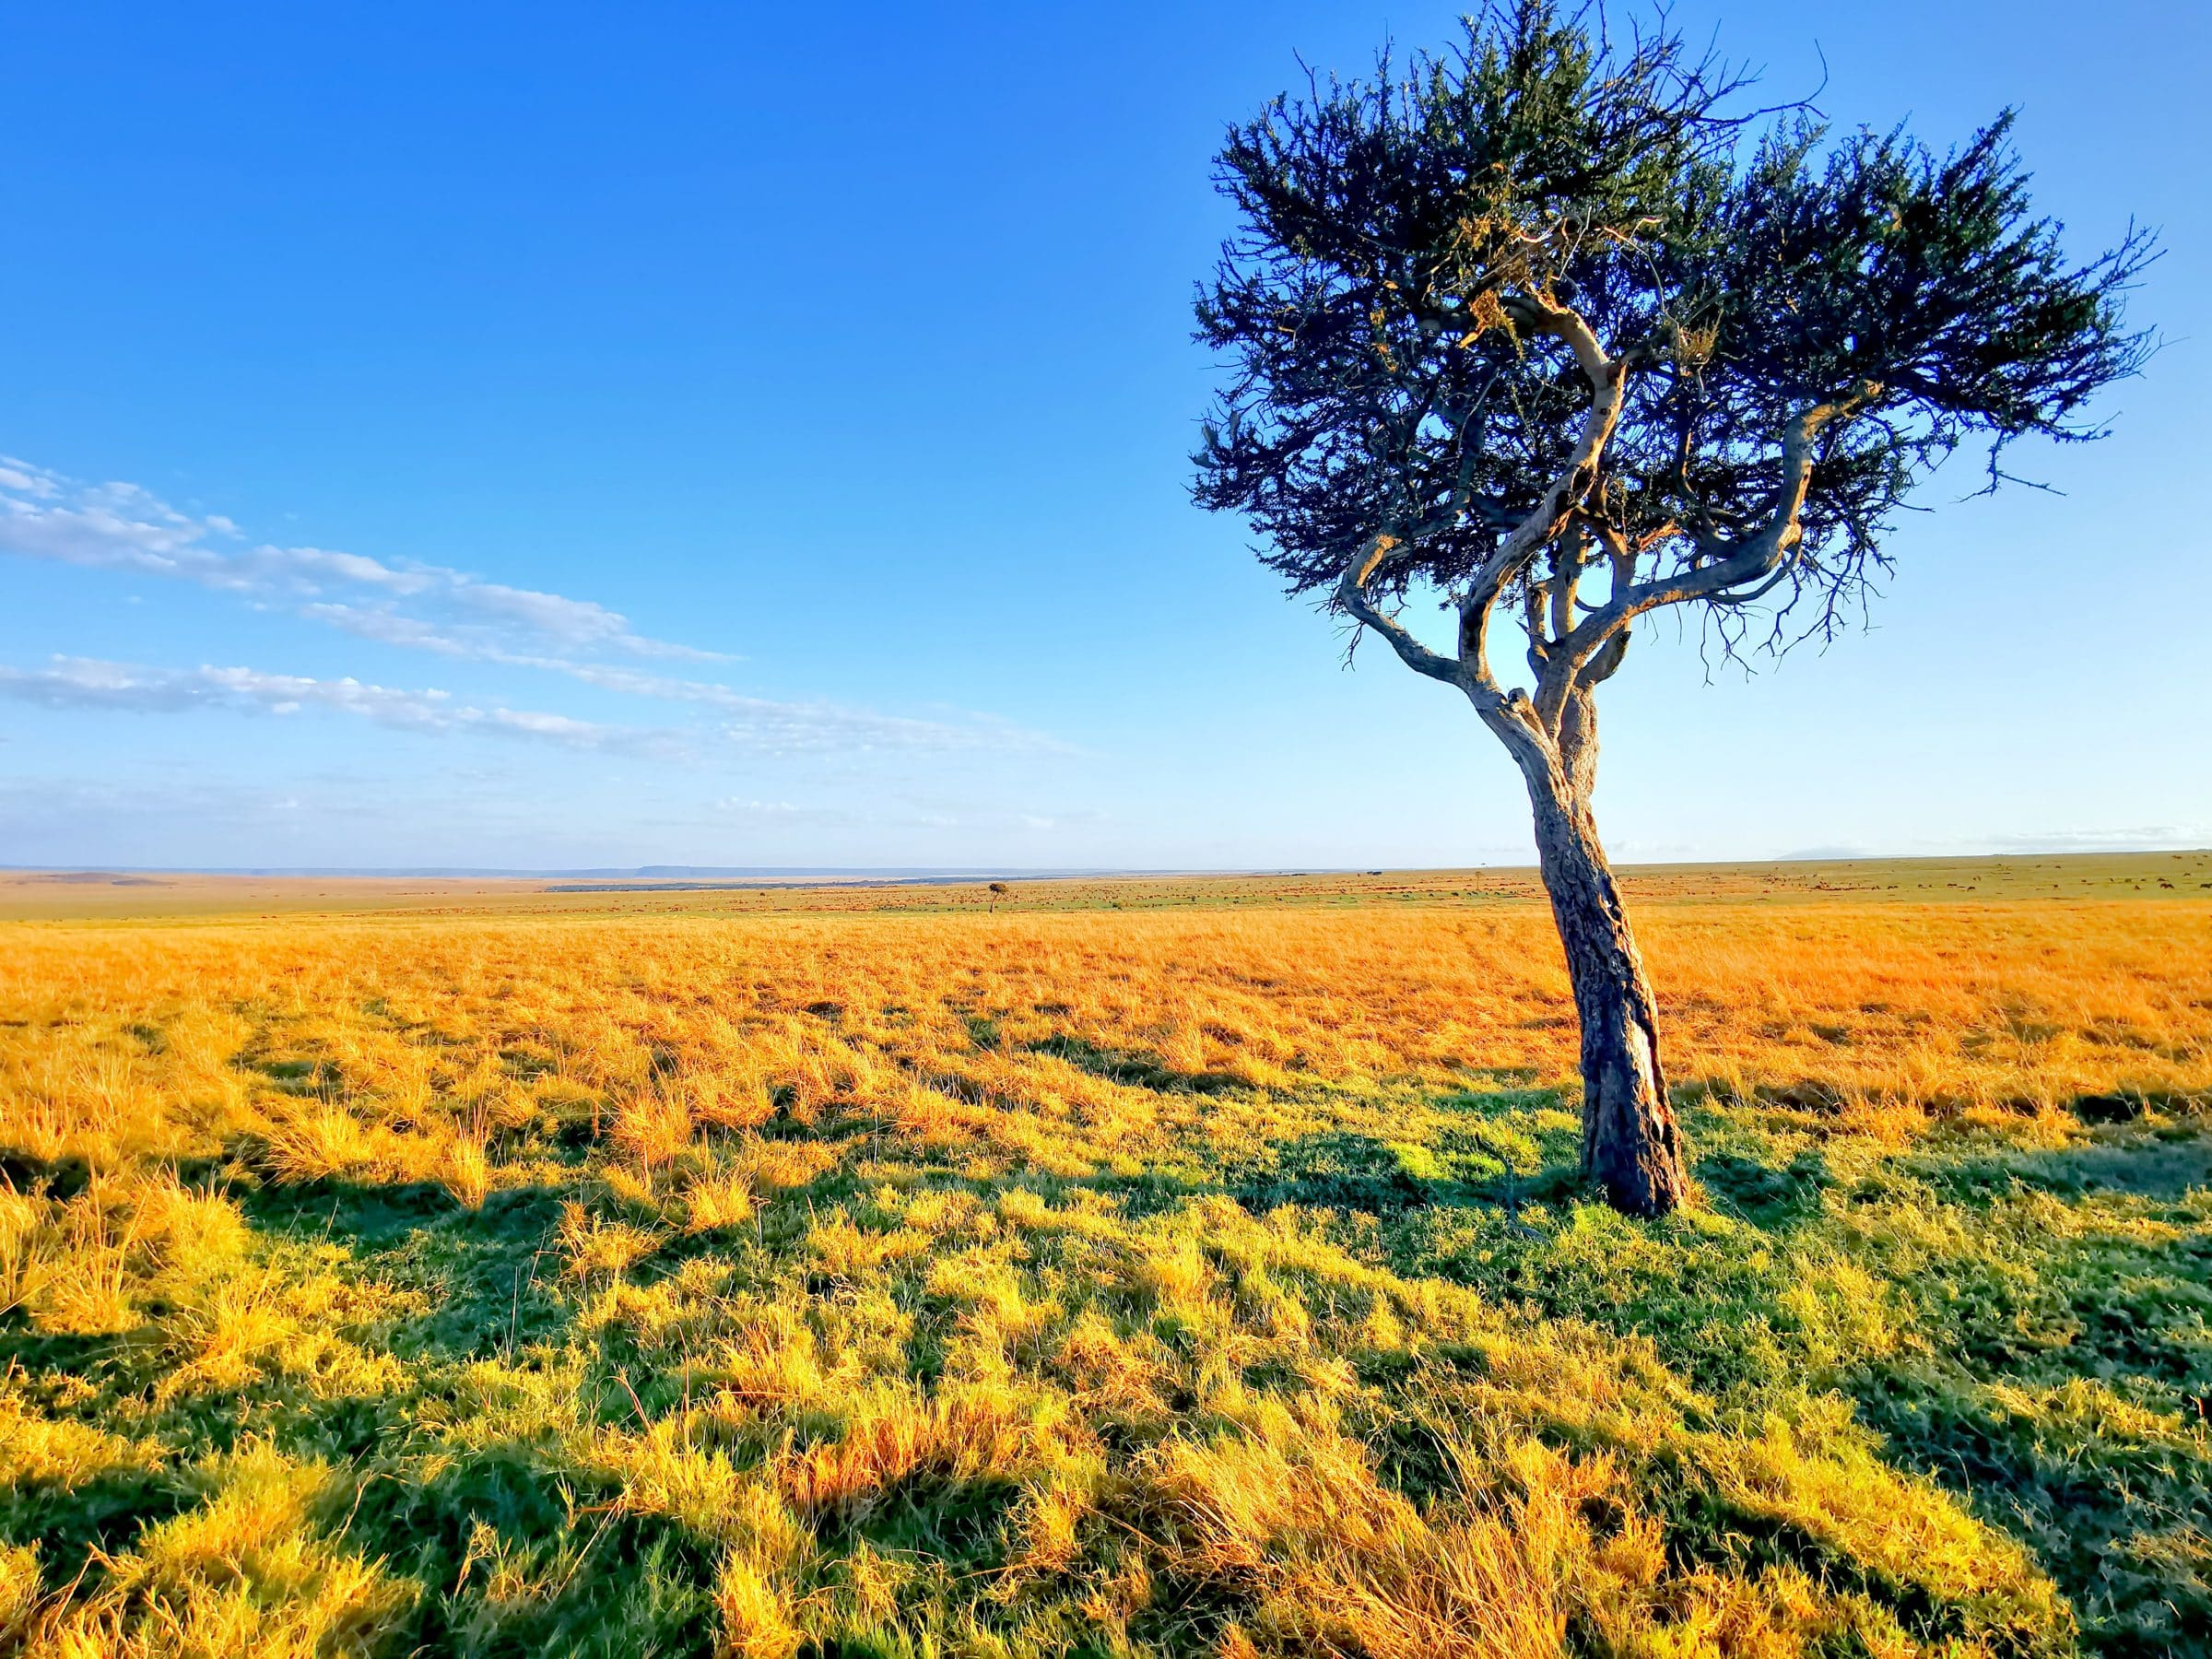 Grote vlaktes en een 'verdwaalde boom'. Dit is het beeld wat je vaak ziet in de Masai Mara en Serengeti